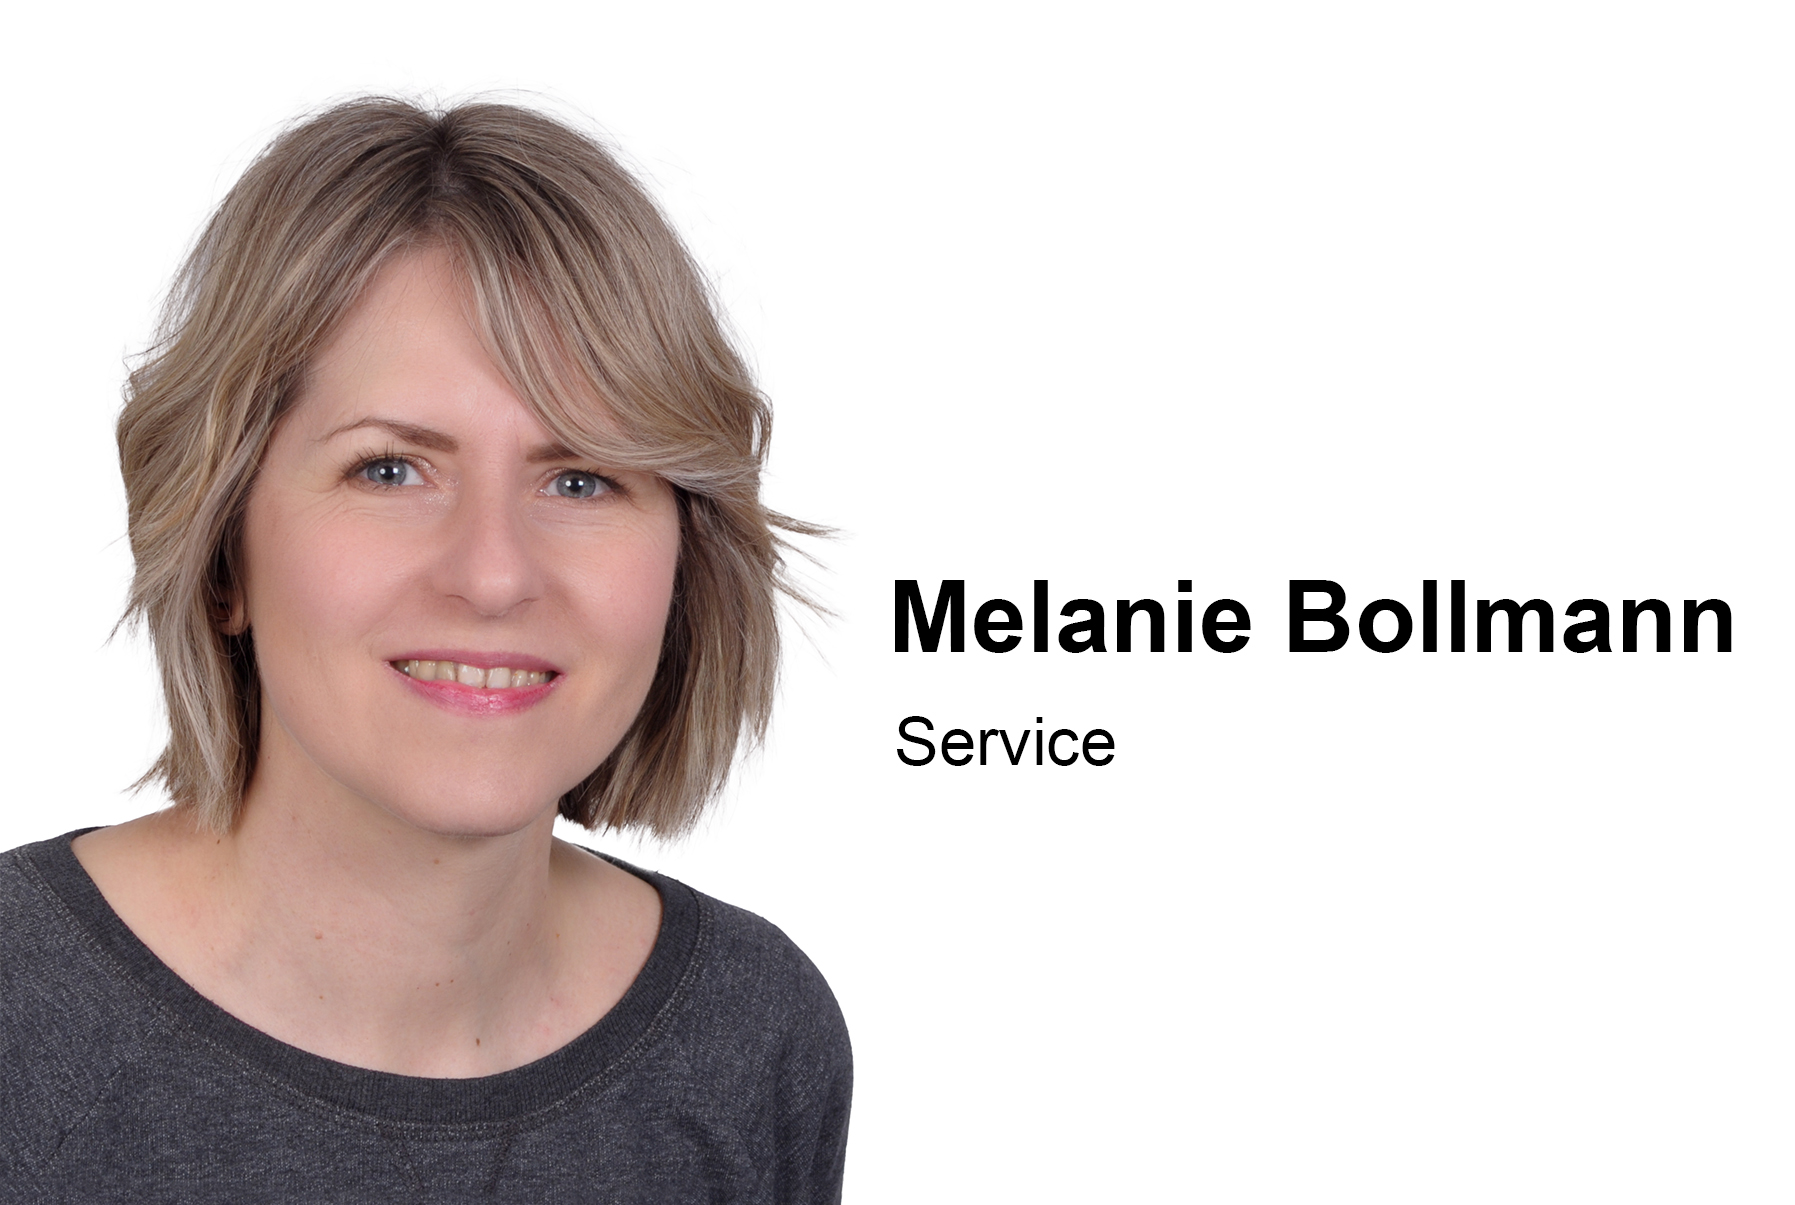 Bollmann, Melanie